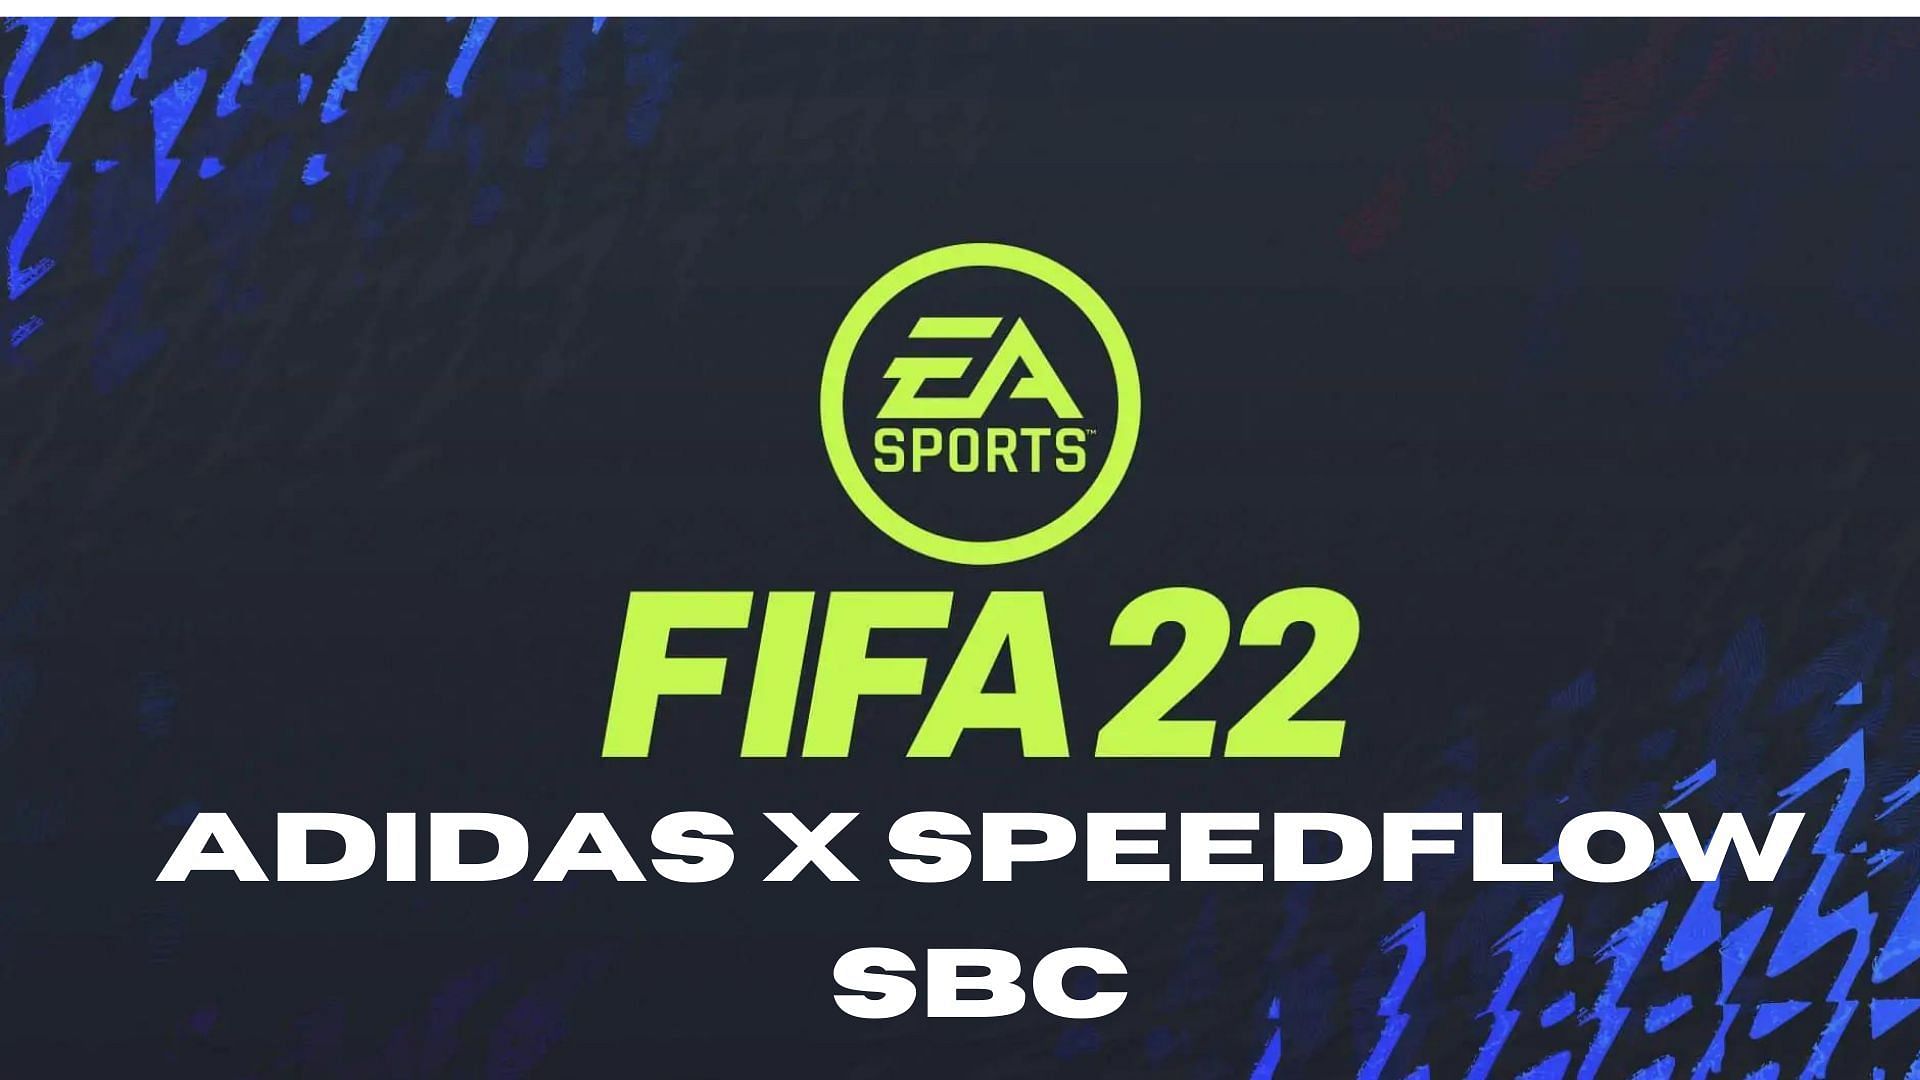 FIFA 22 Adidas X Speedflow is the latest SBC (Image via Sportskeeda)